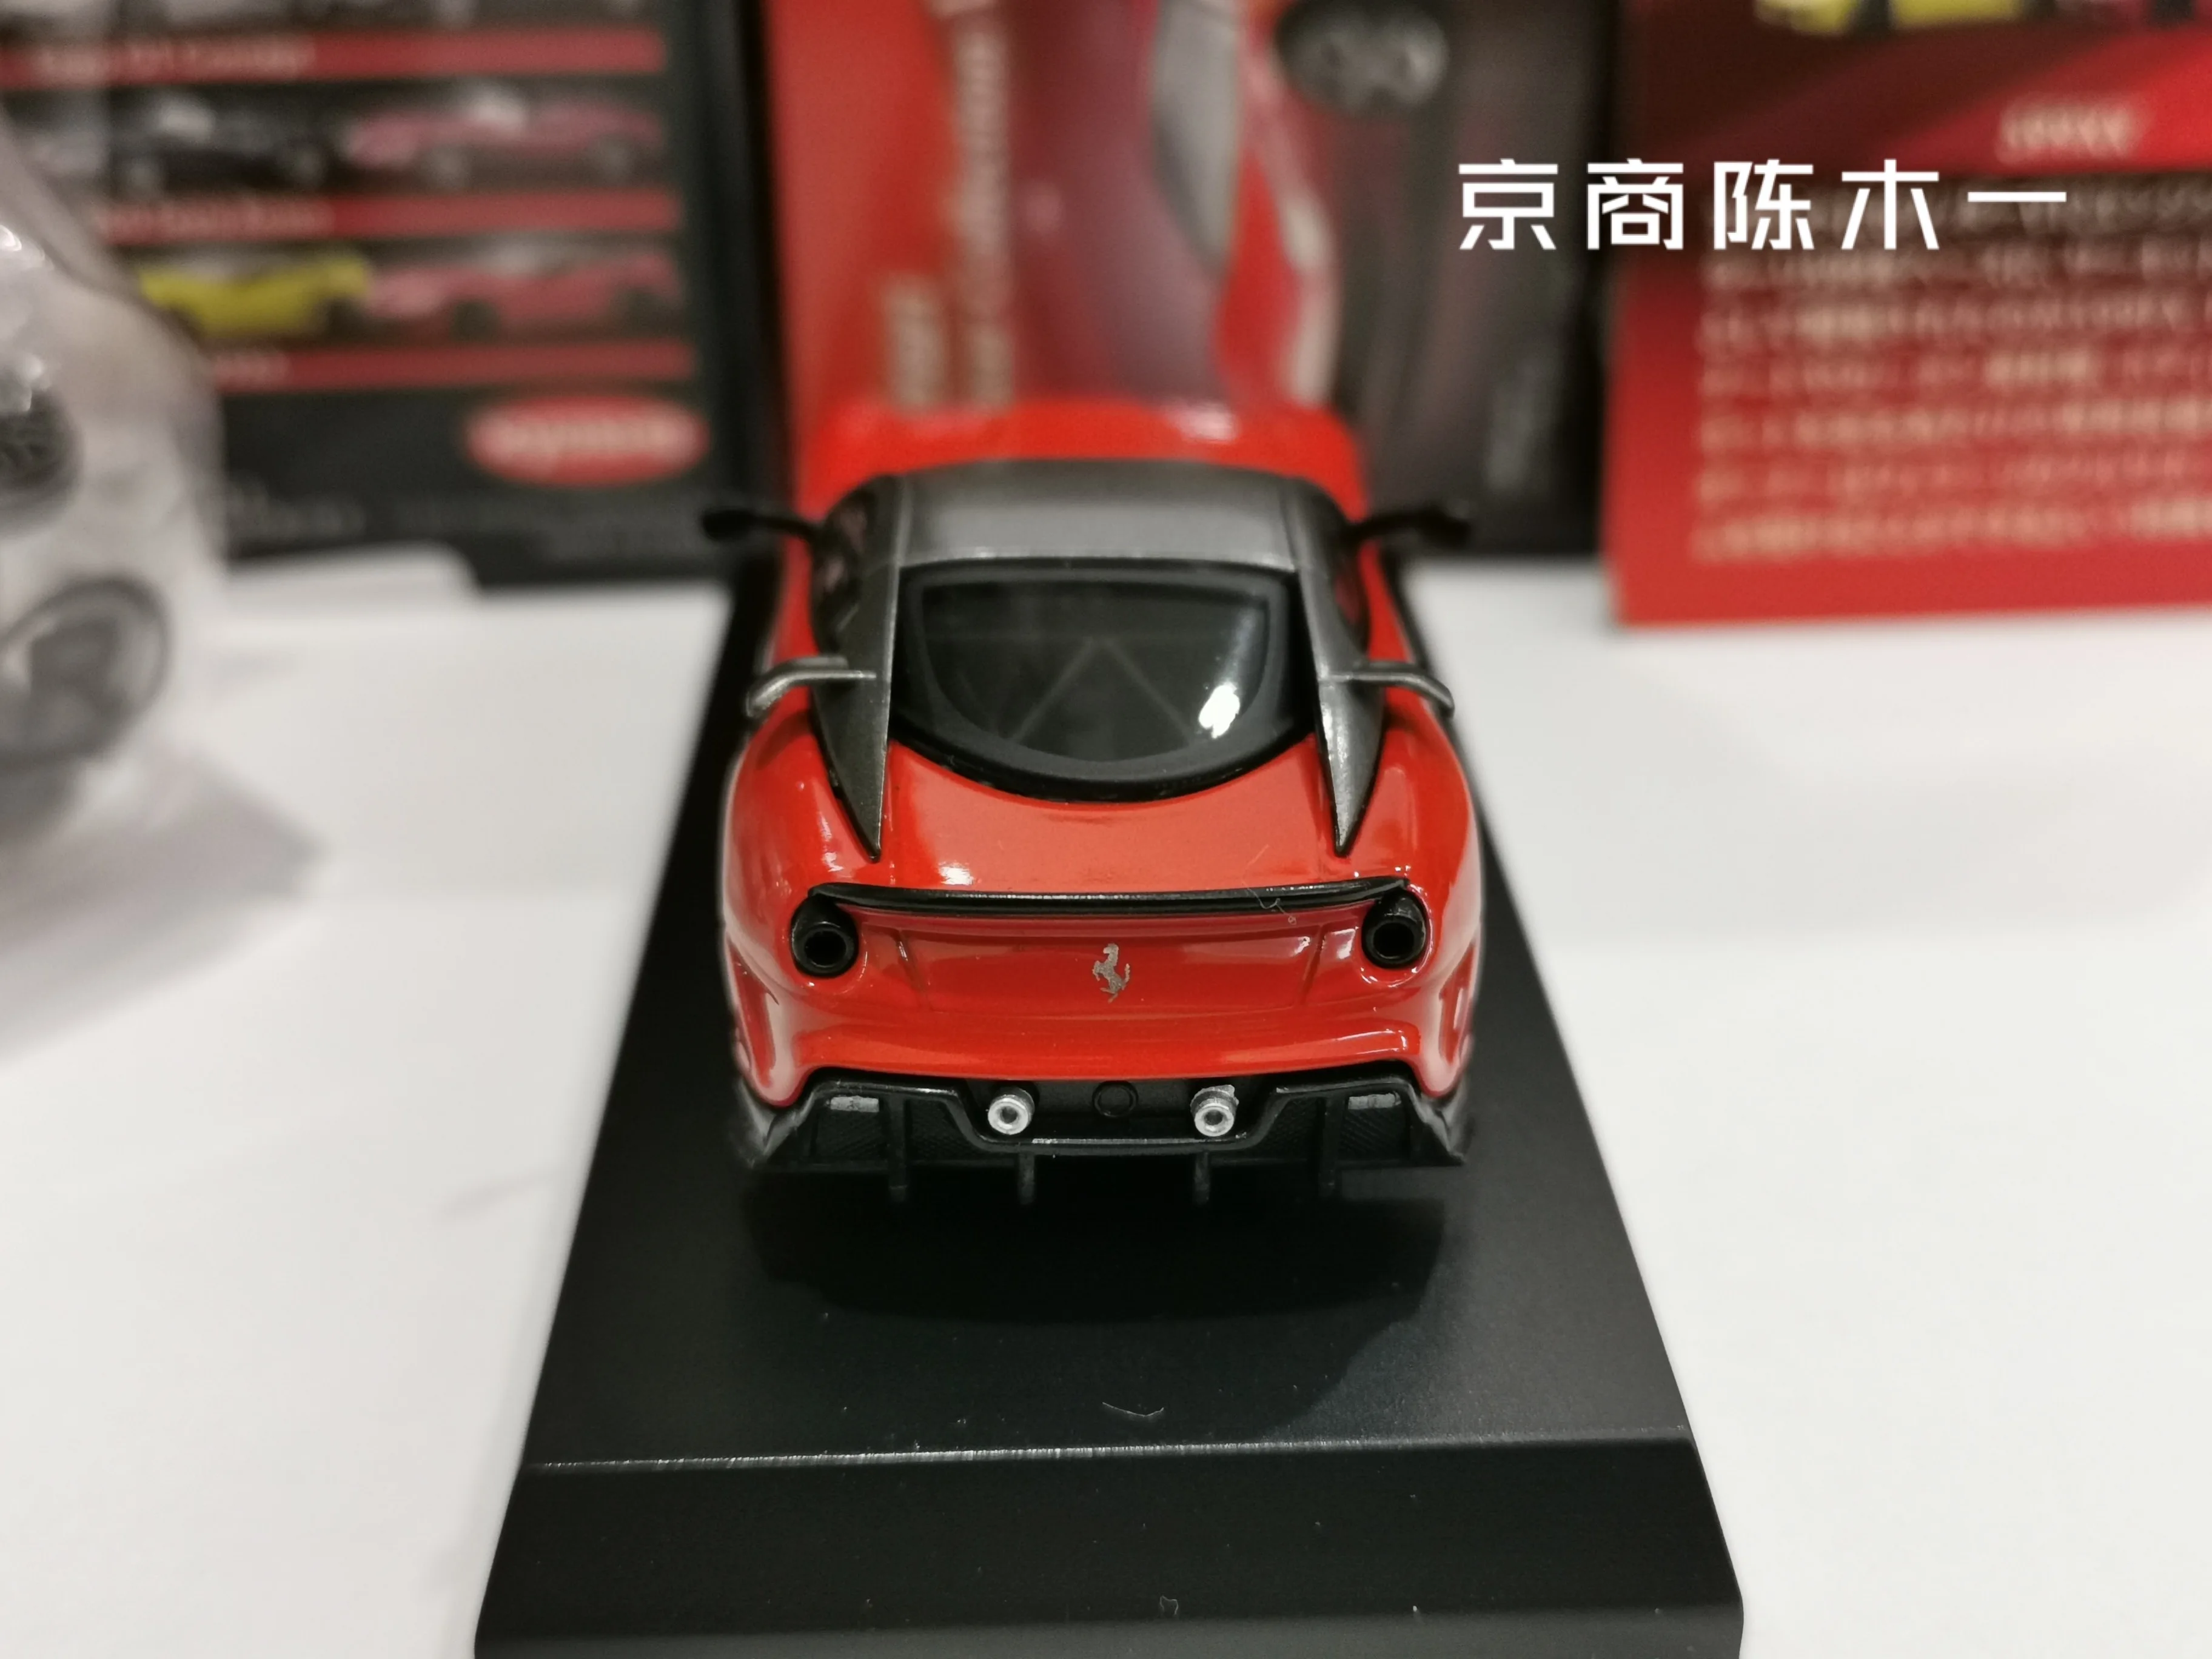 1:64 Kyosho Ferrari 599XX Koleksiyonu döküm alaşım arabası modeli süsler - 3